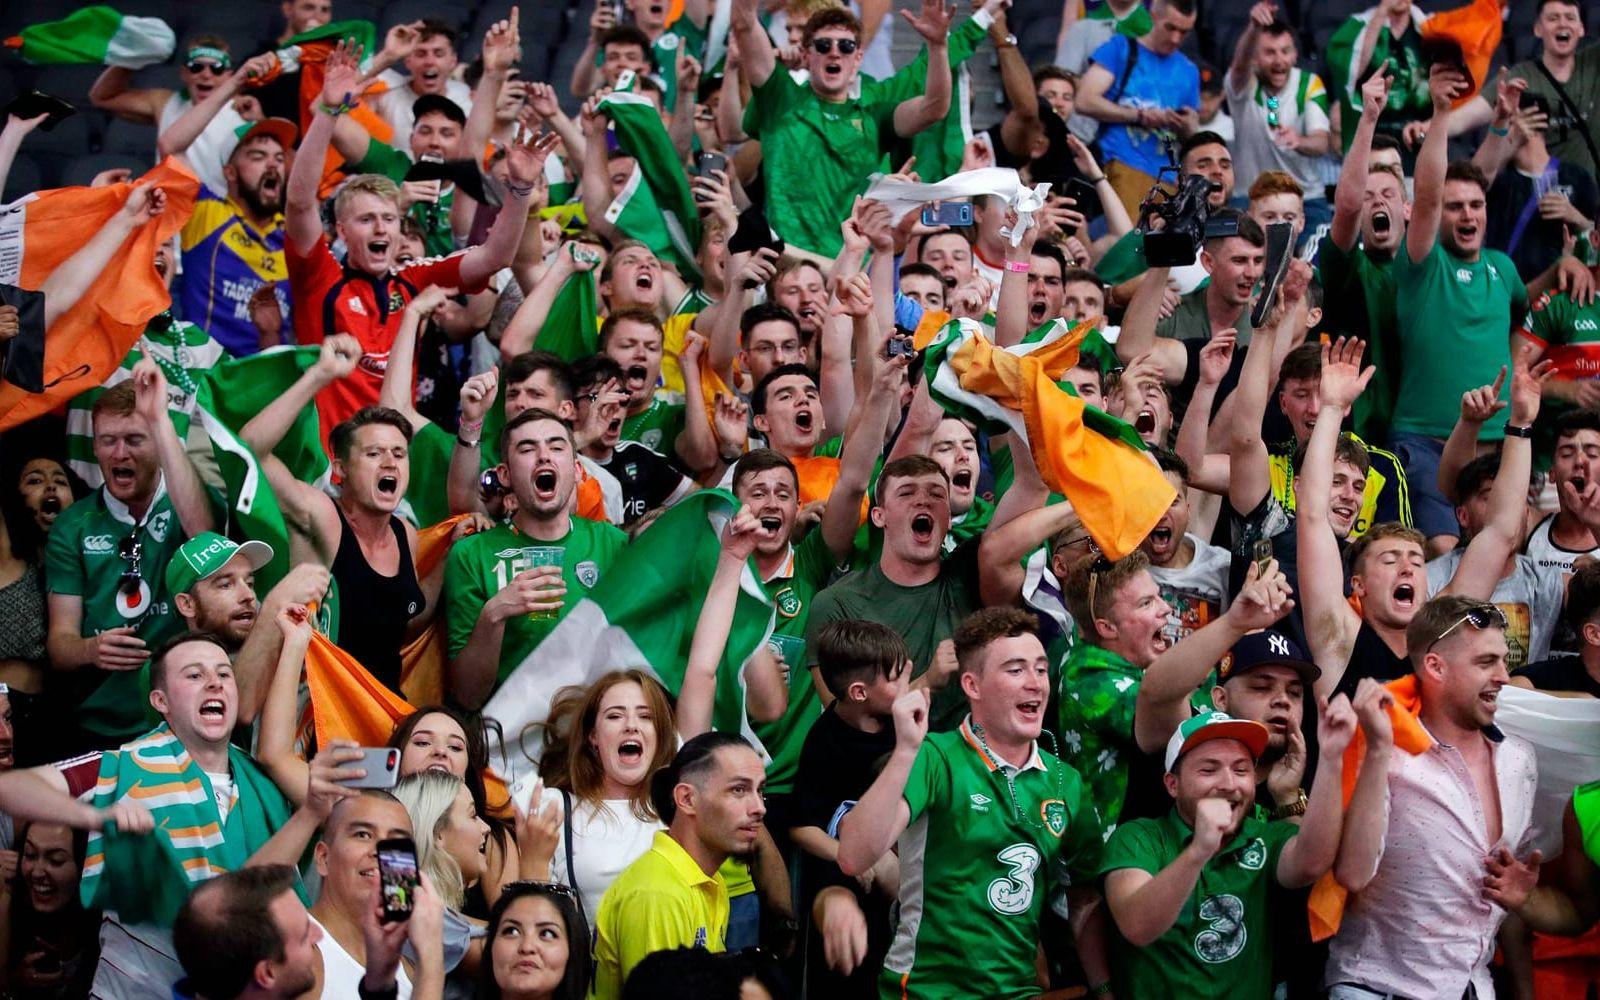 Många var irländare som hejar på McGregor. Bild: TT.